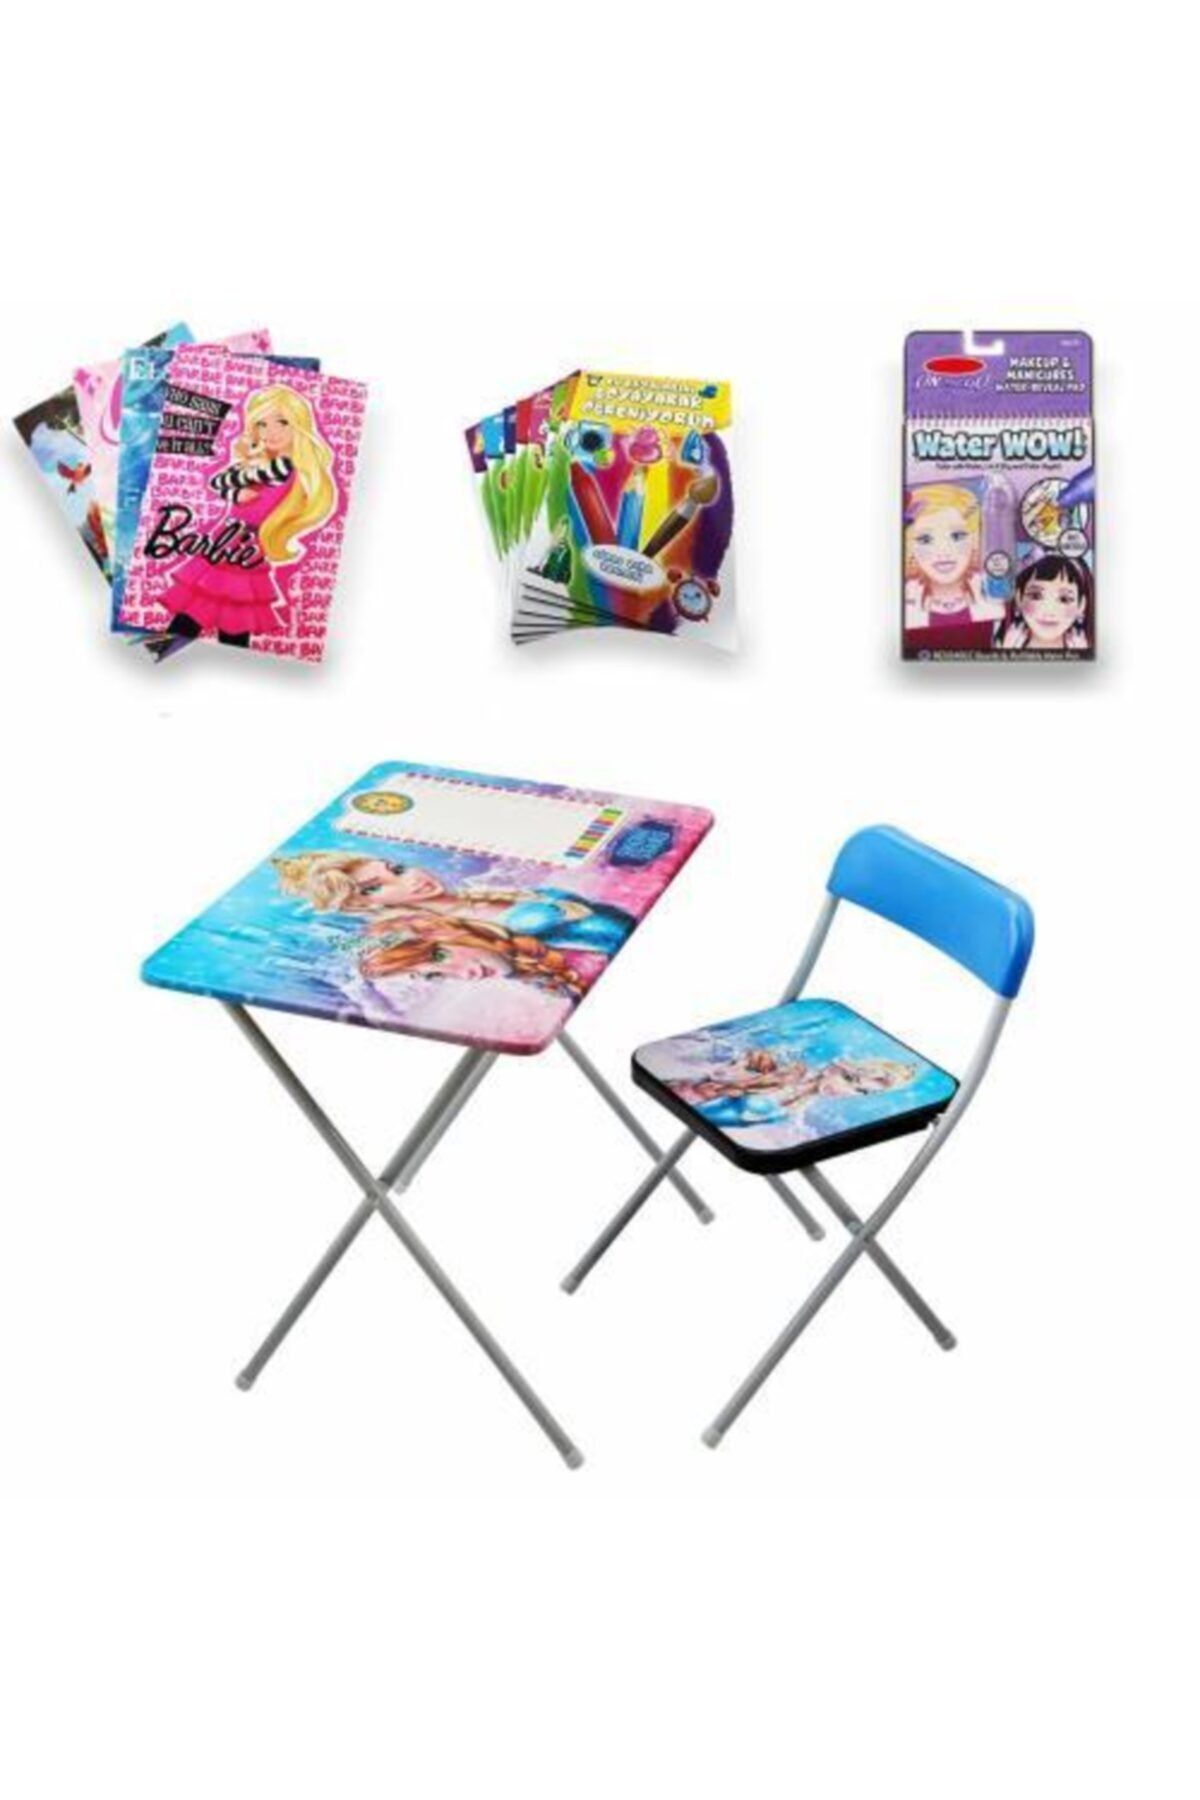 Mashotrend Frozen Çocuk Ders Çalışma Masası - Kraliçe Ders Masası + Su Kalem Boyama Kitabı + 4 Boyama Kitabı